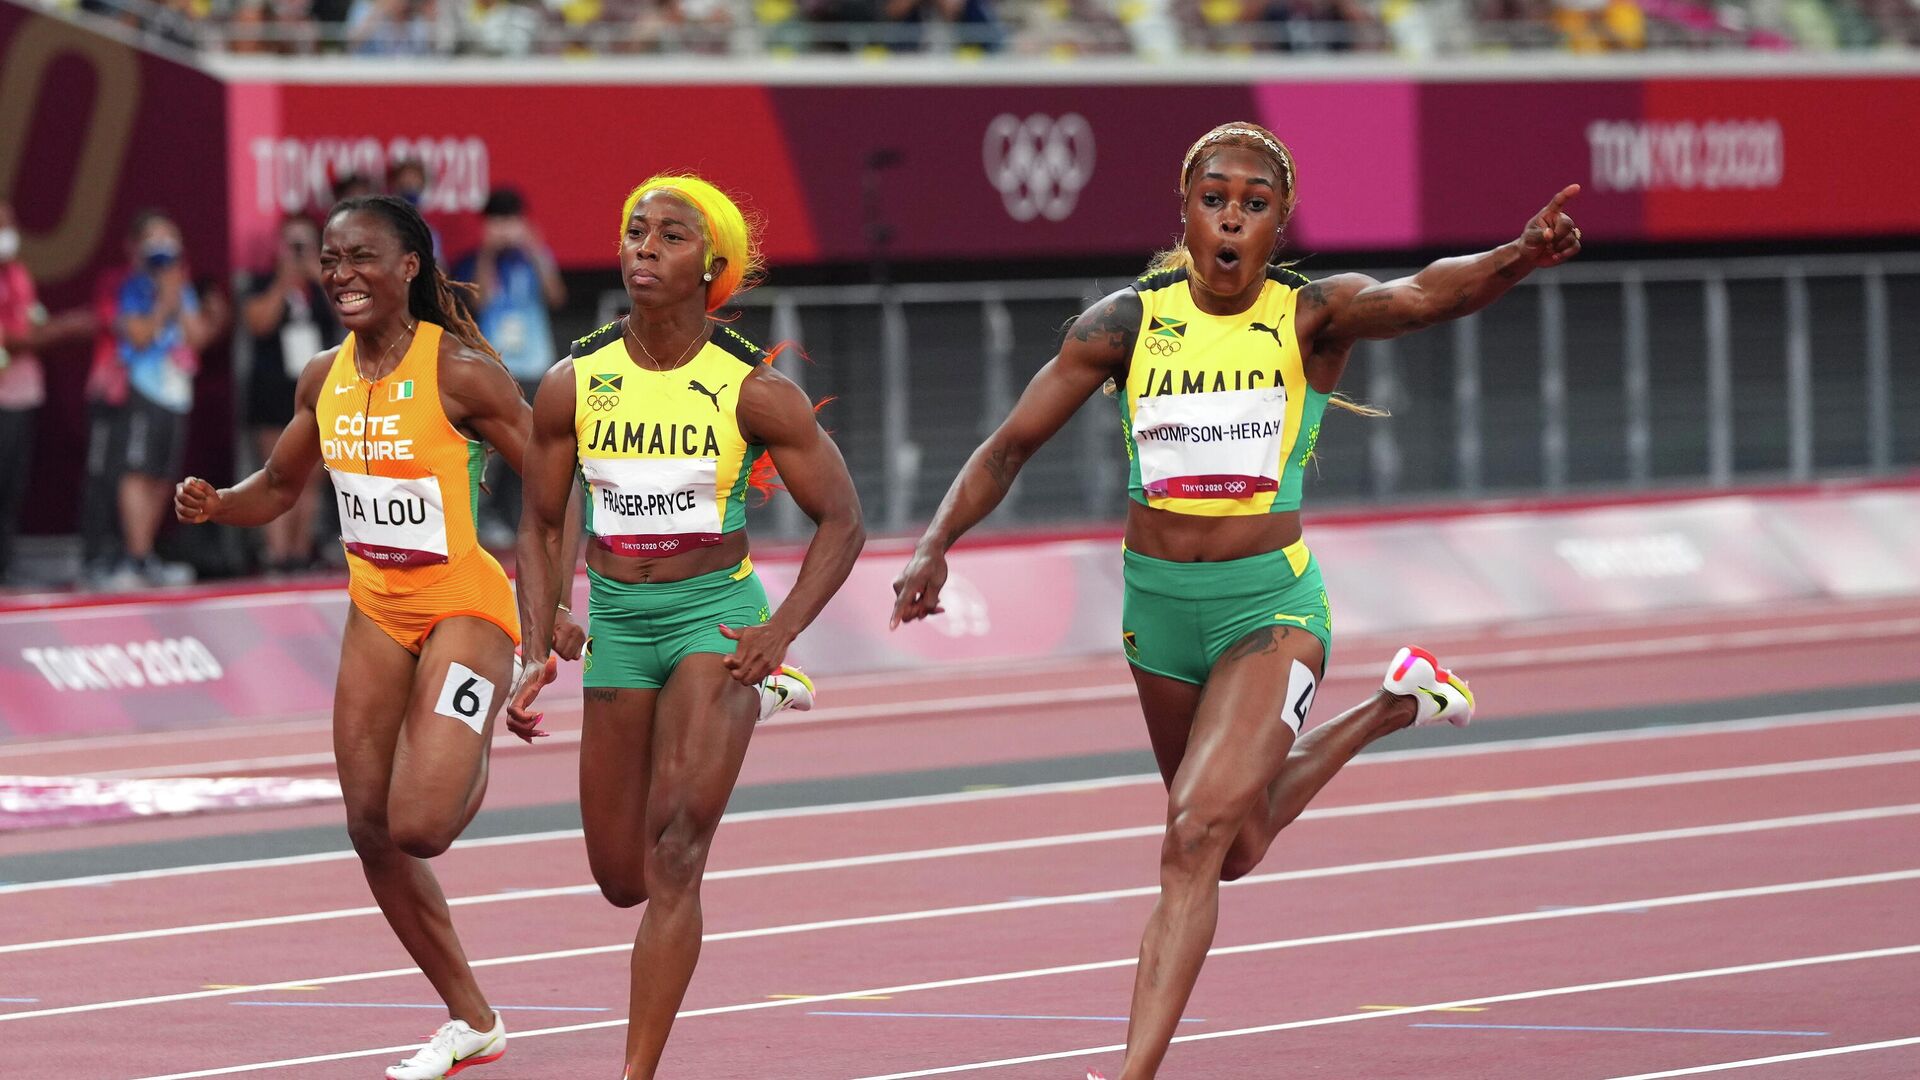 Ямайская бегунья Элейн Томпсон-Хера победила на дистанции 100 м на этапе Бр...